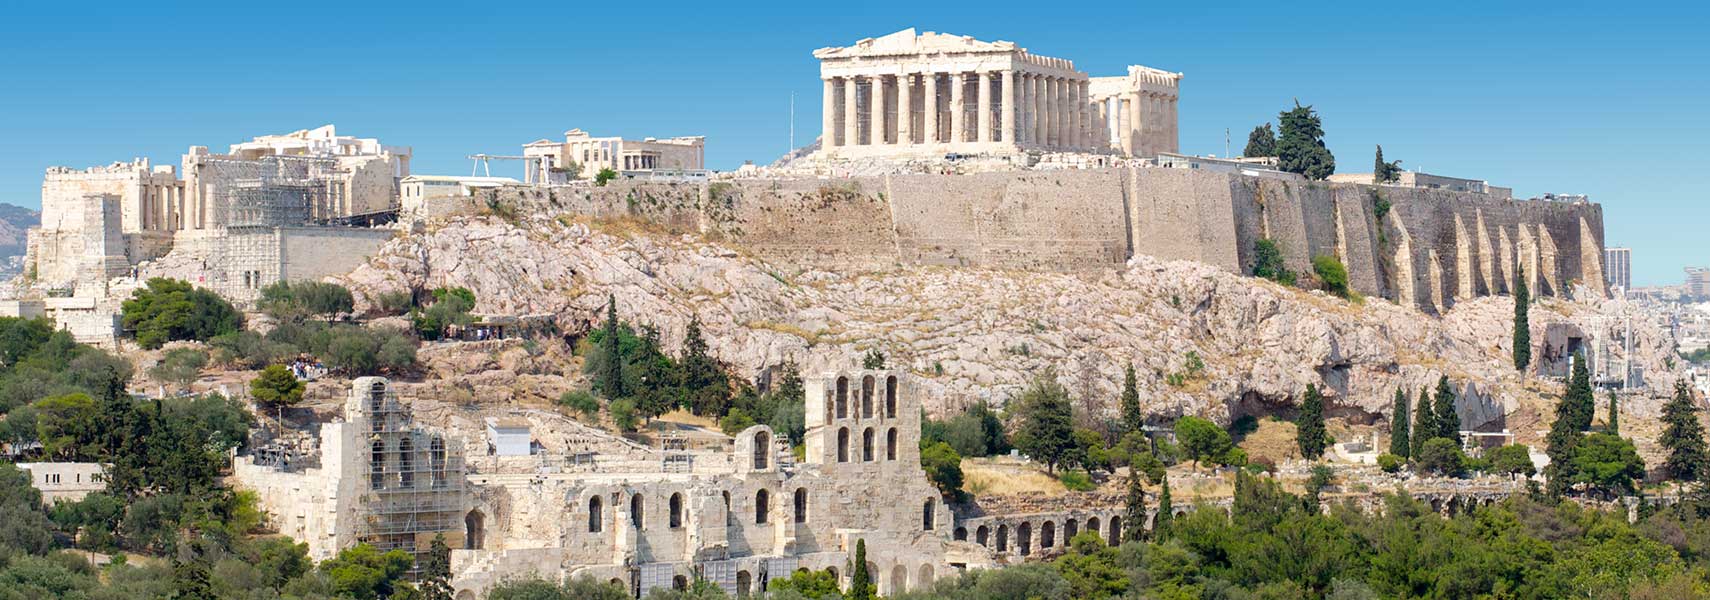 Acropolis, Athens, Greece. 